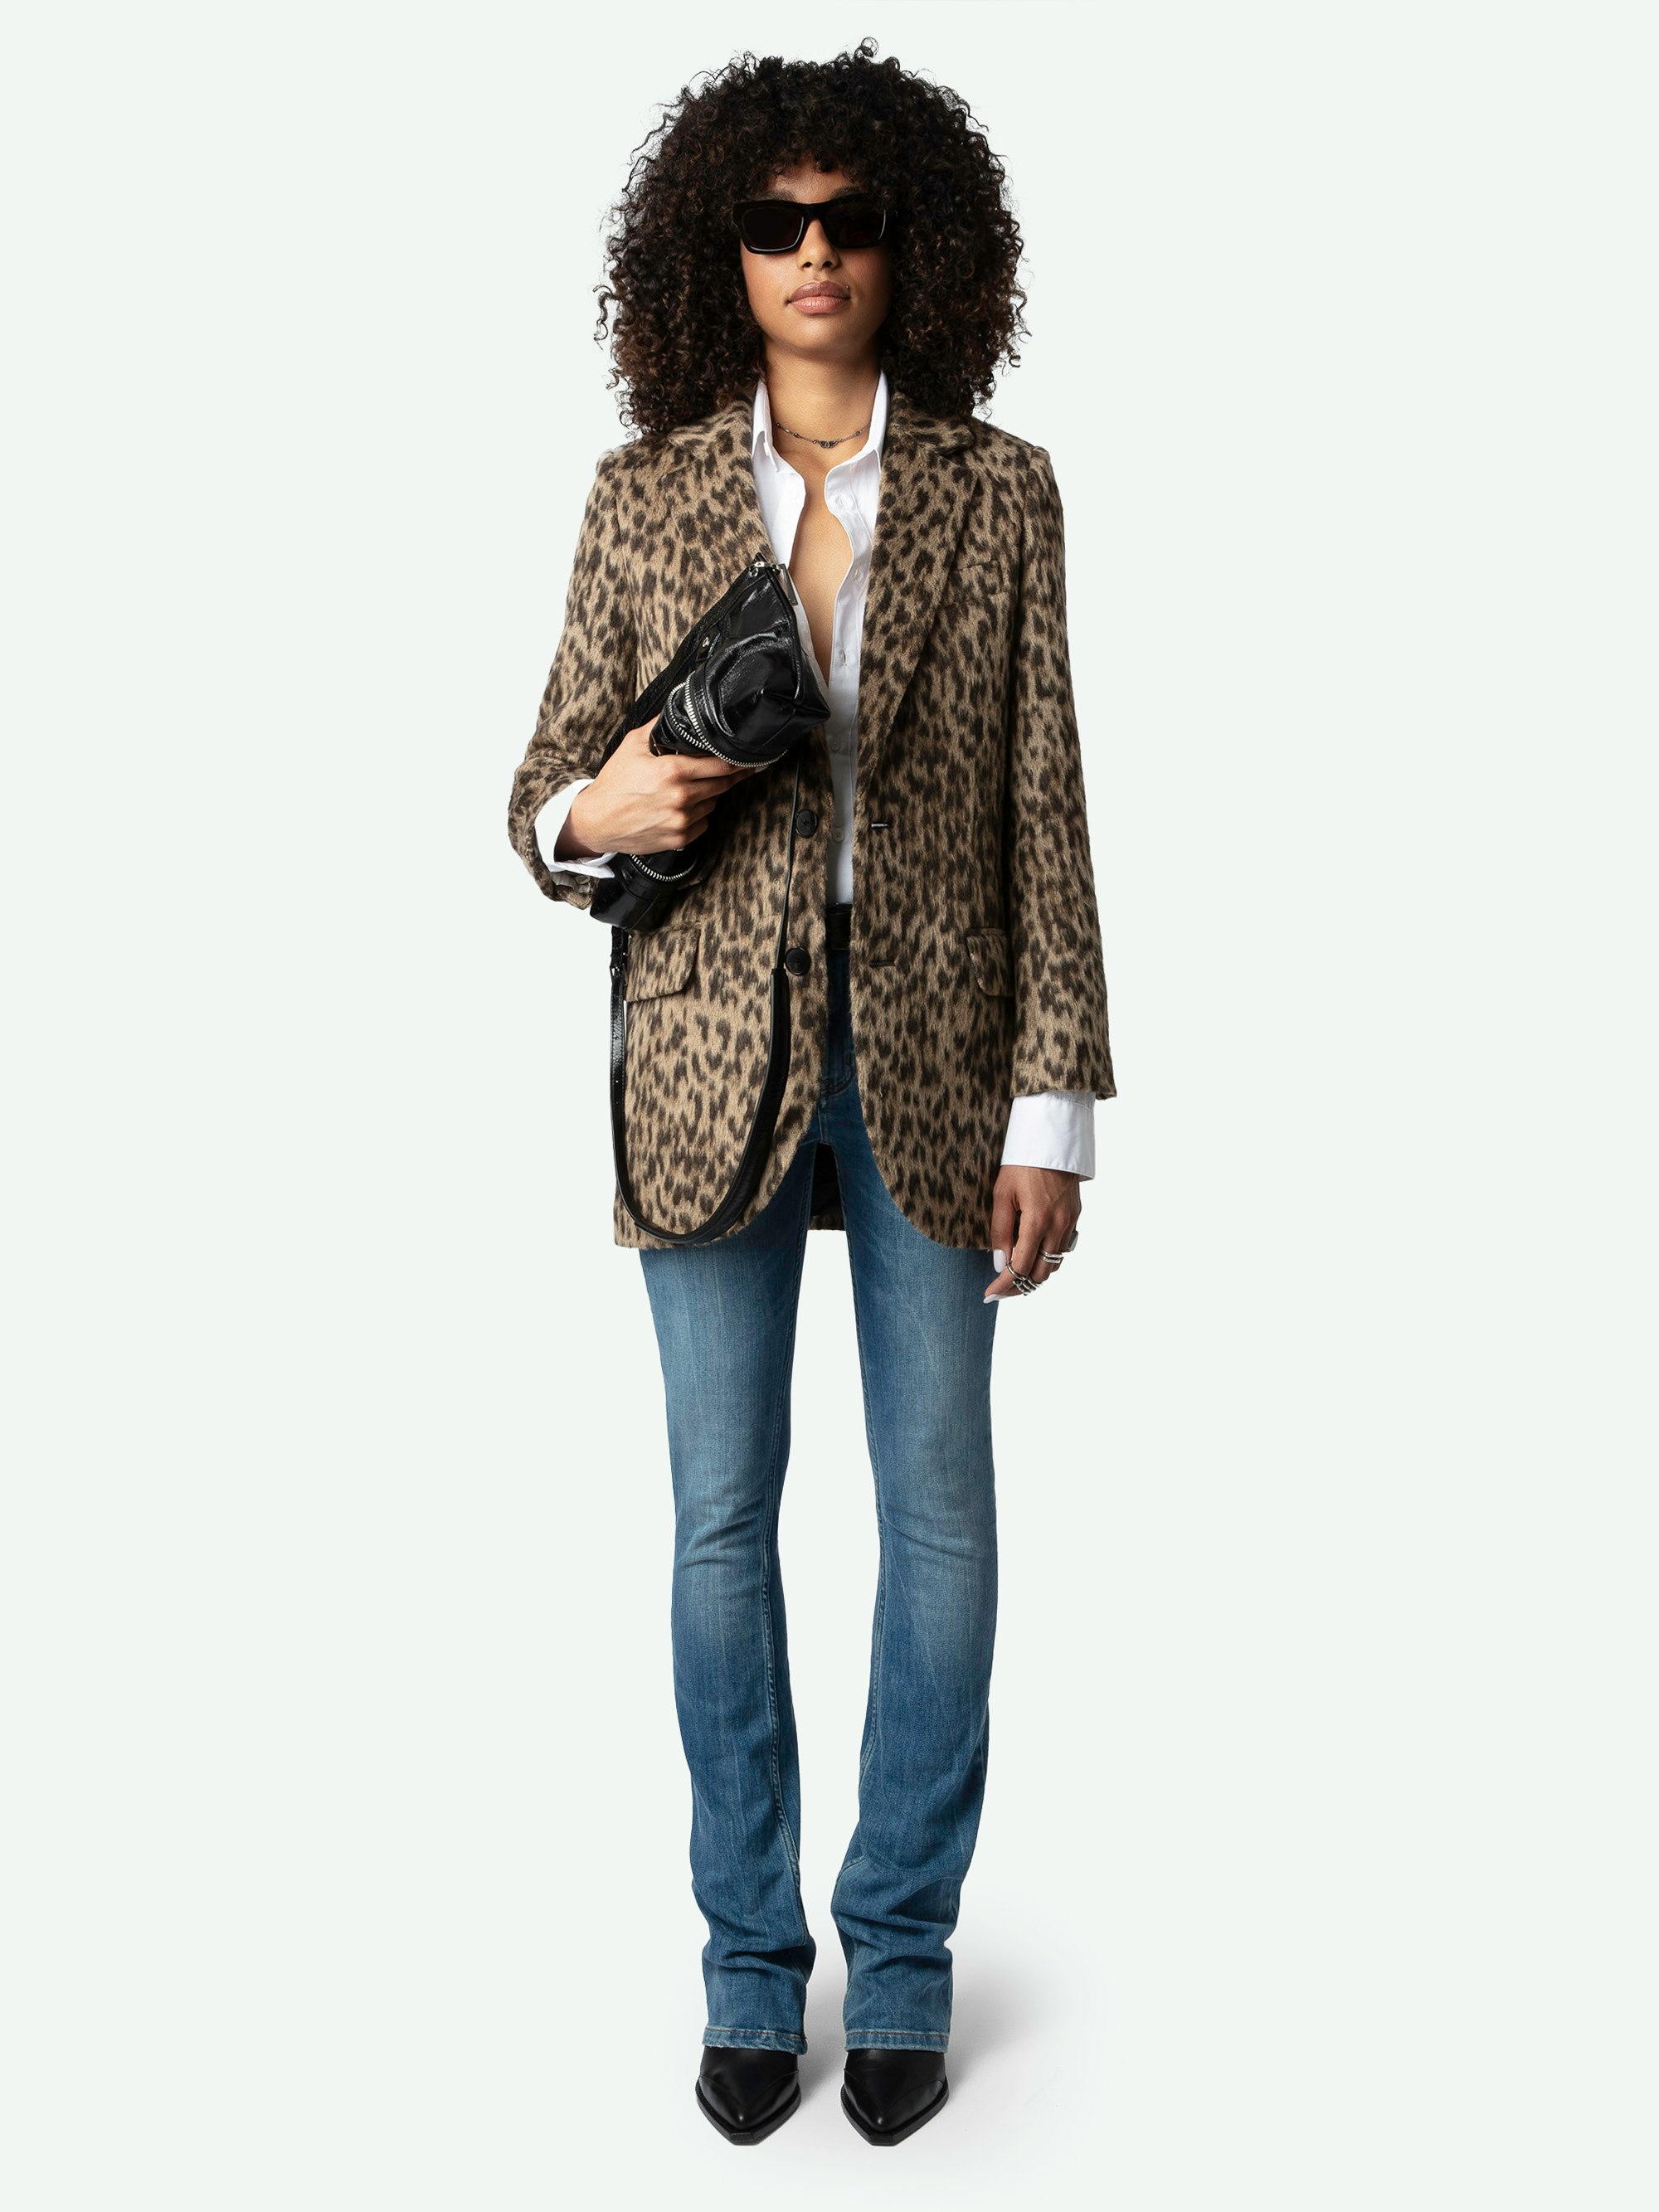 Mantel Violet Leopard - Halblanger, brauner und strukturierter Mantel mit Wild-Print, Knopfverschluss und Taschen.